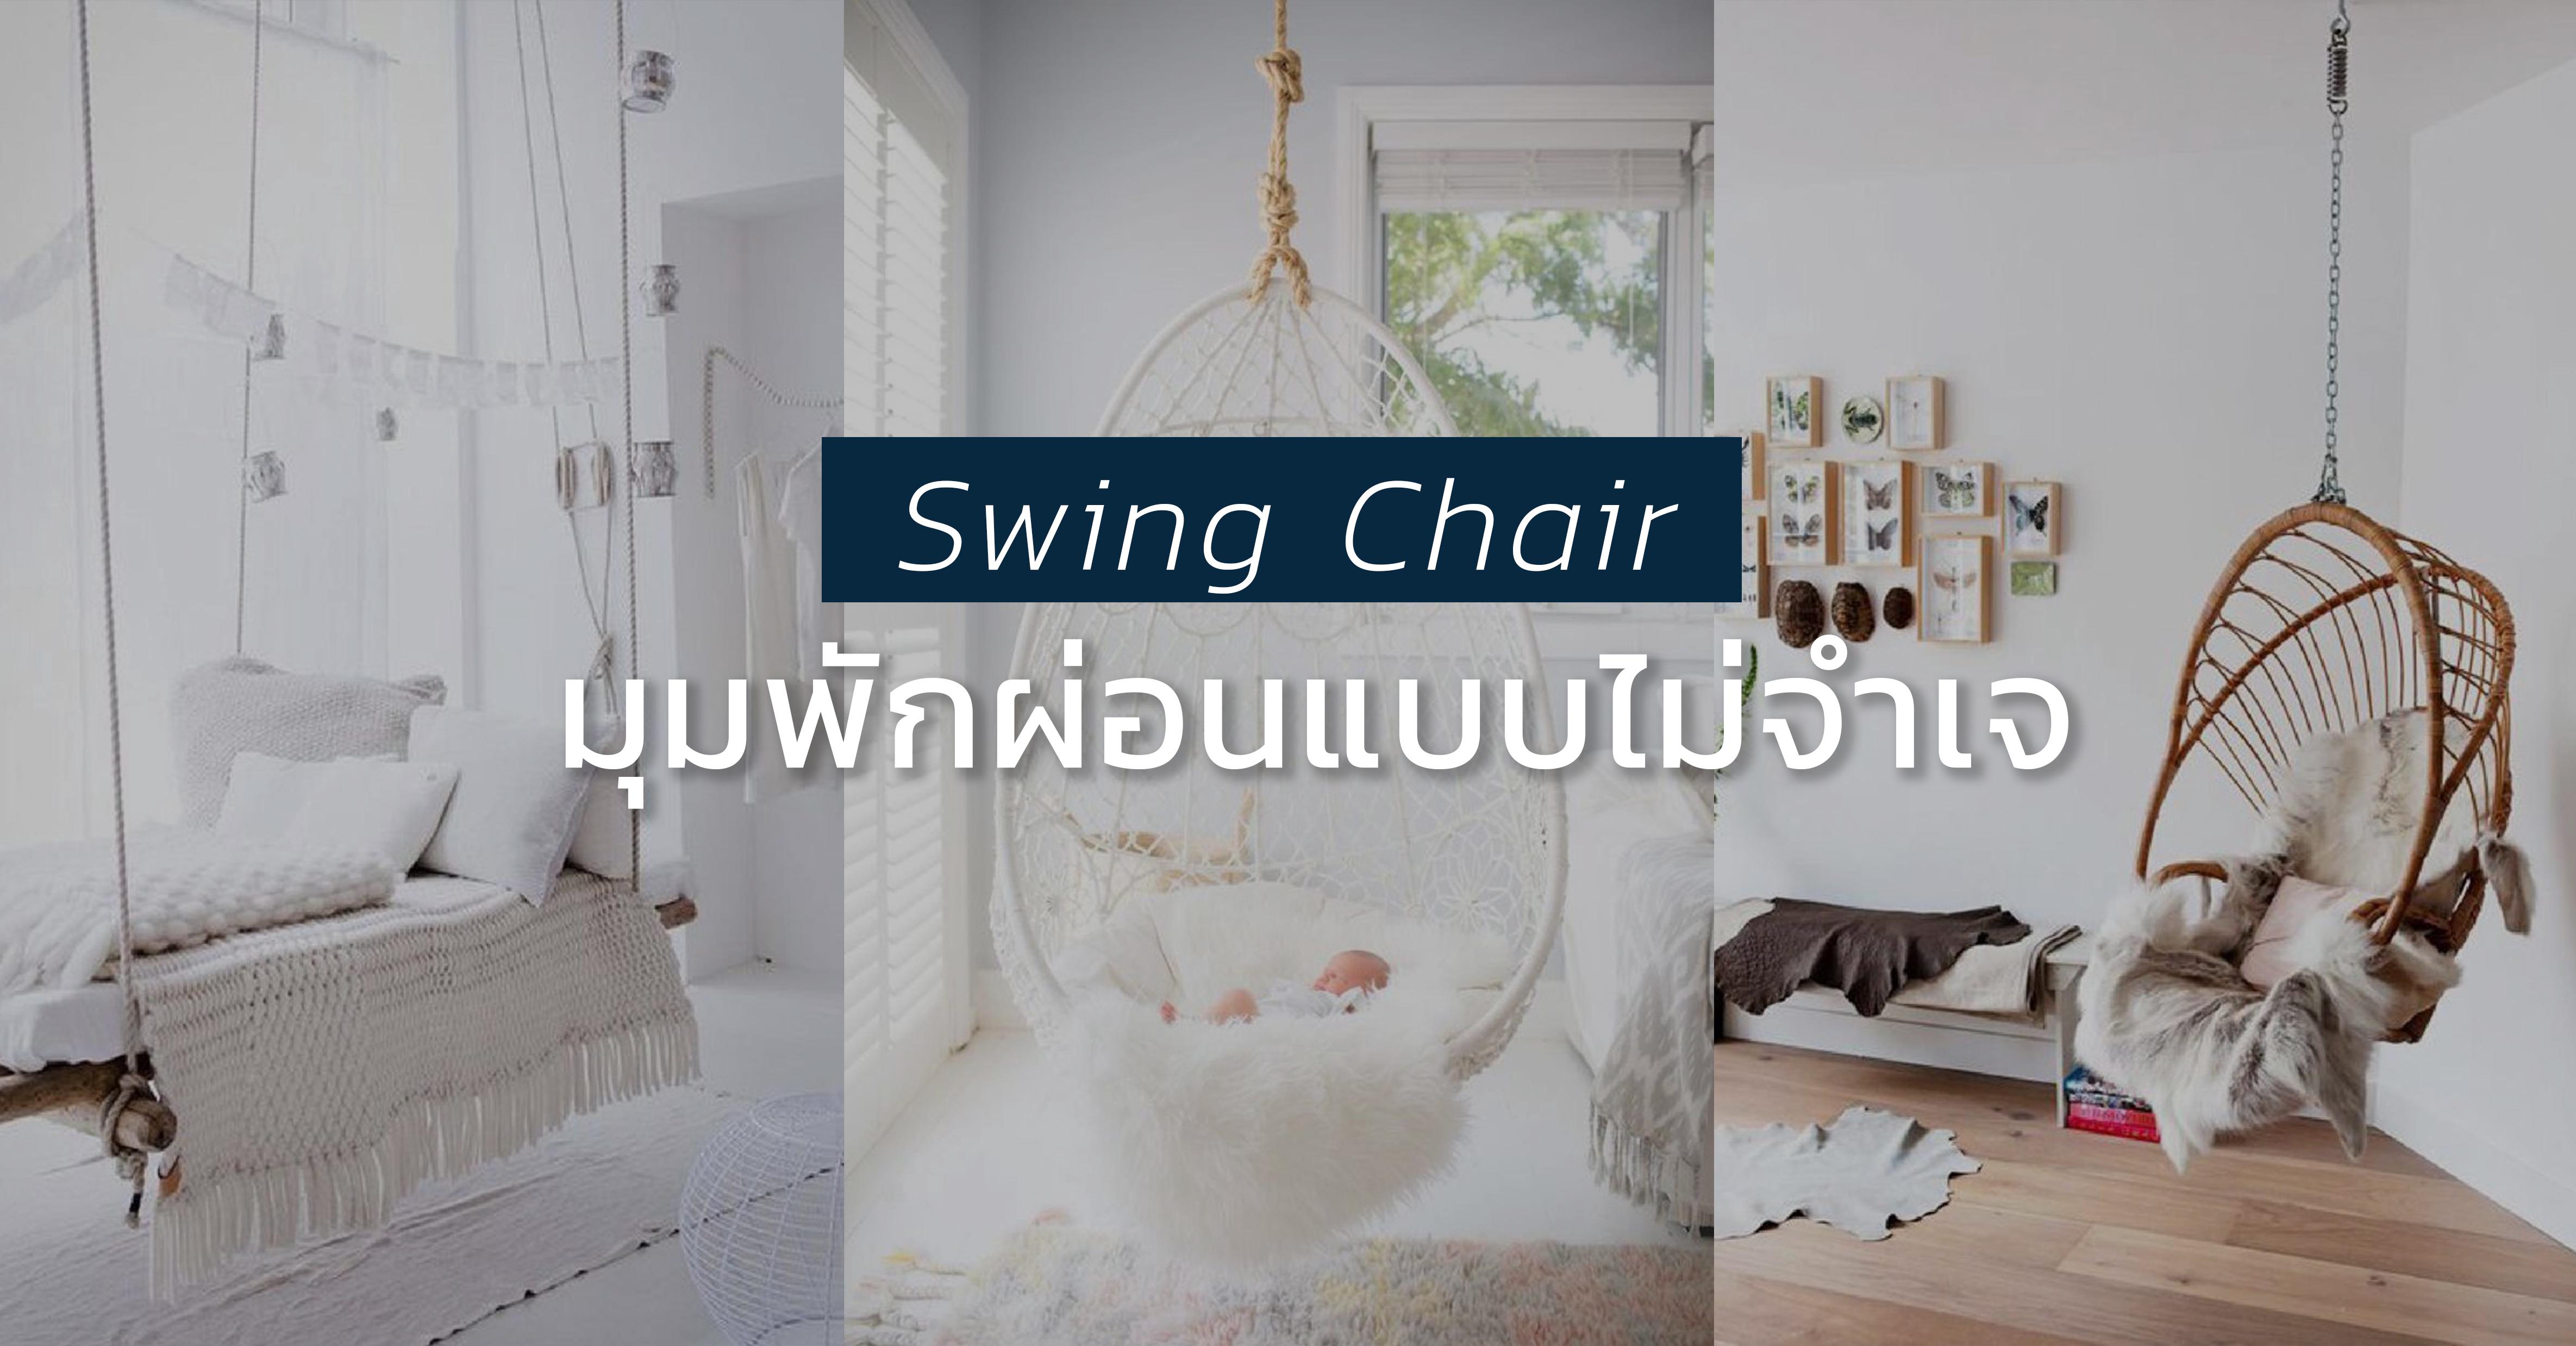 รูปบทความ เปลี่ยนเฟอร์นิเจอร์ใหม่ให้ห้อง ด้วย swing chair นั่งสบาย ผ่อนคลายอารมณ์